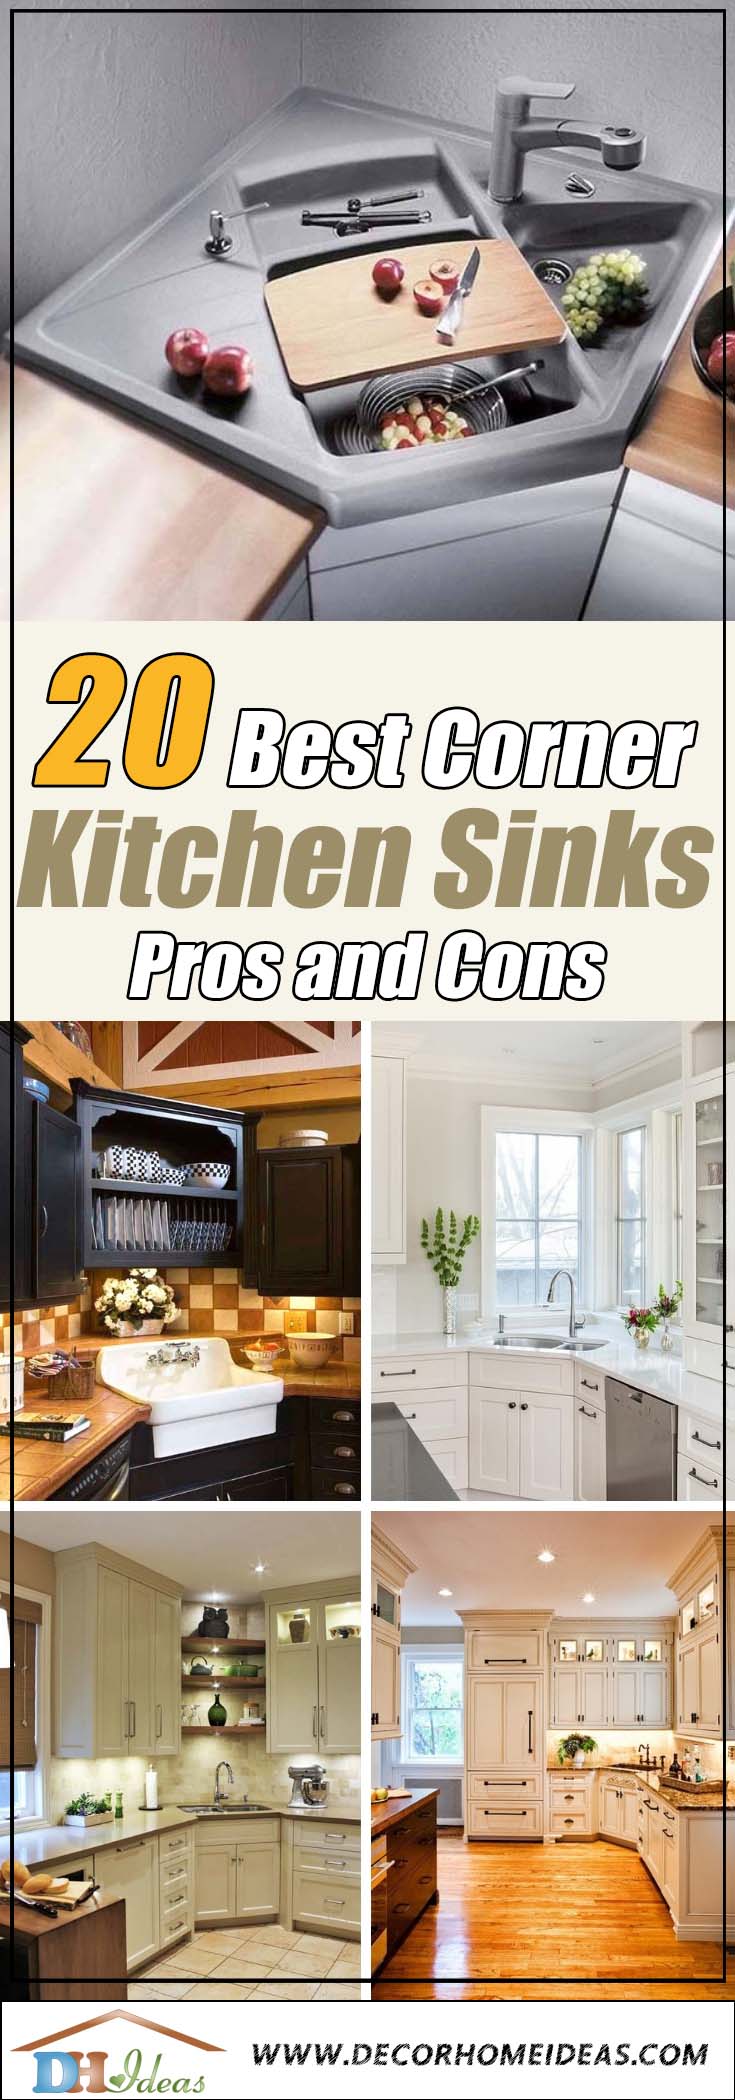 18 Best Corner Kitchen Sink Designs for 1822 Pros & Cons   Decor ...